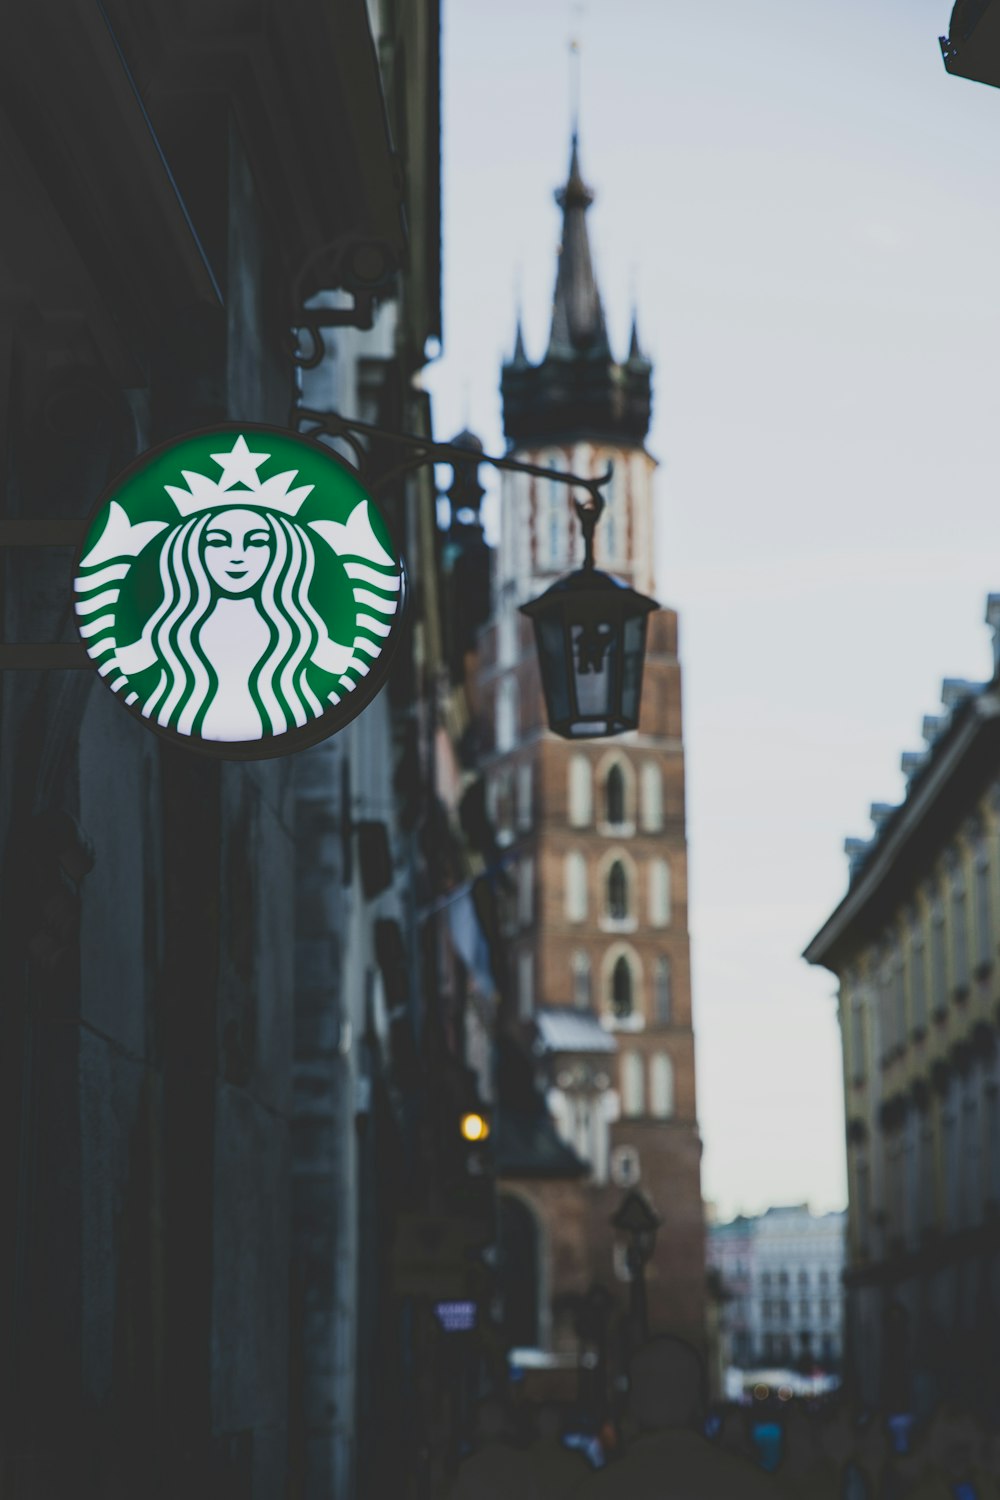 Starbucks-Leuchtreklame an der Wand